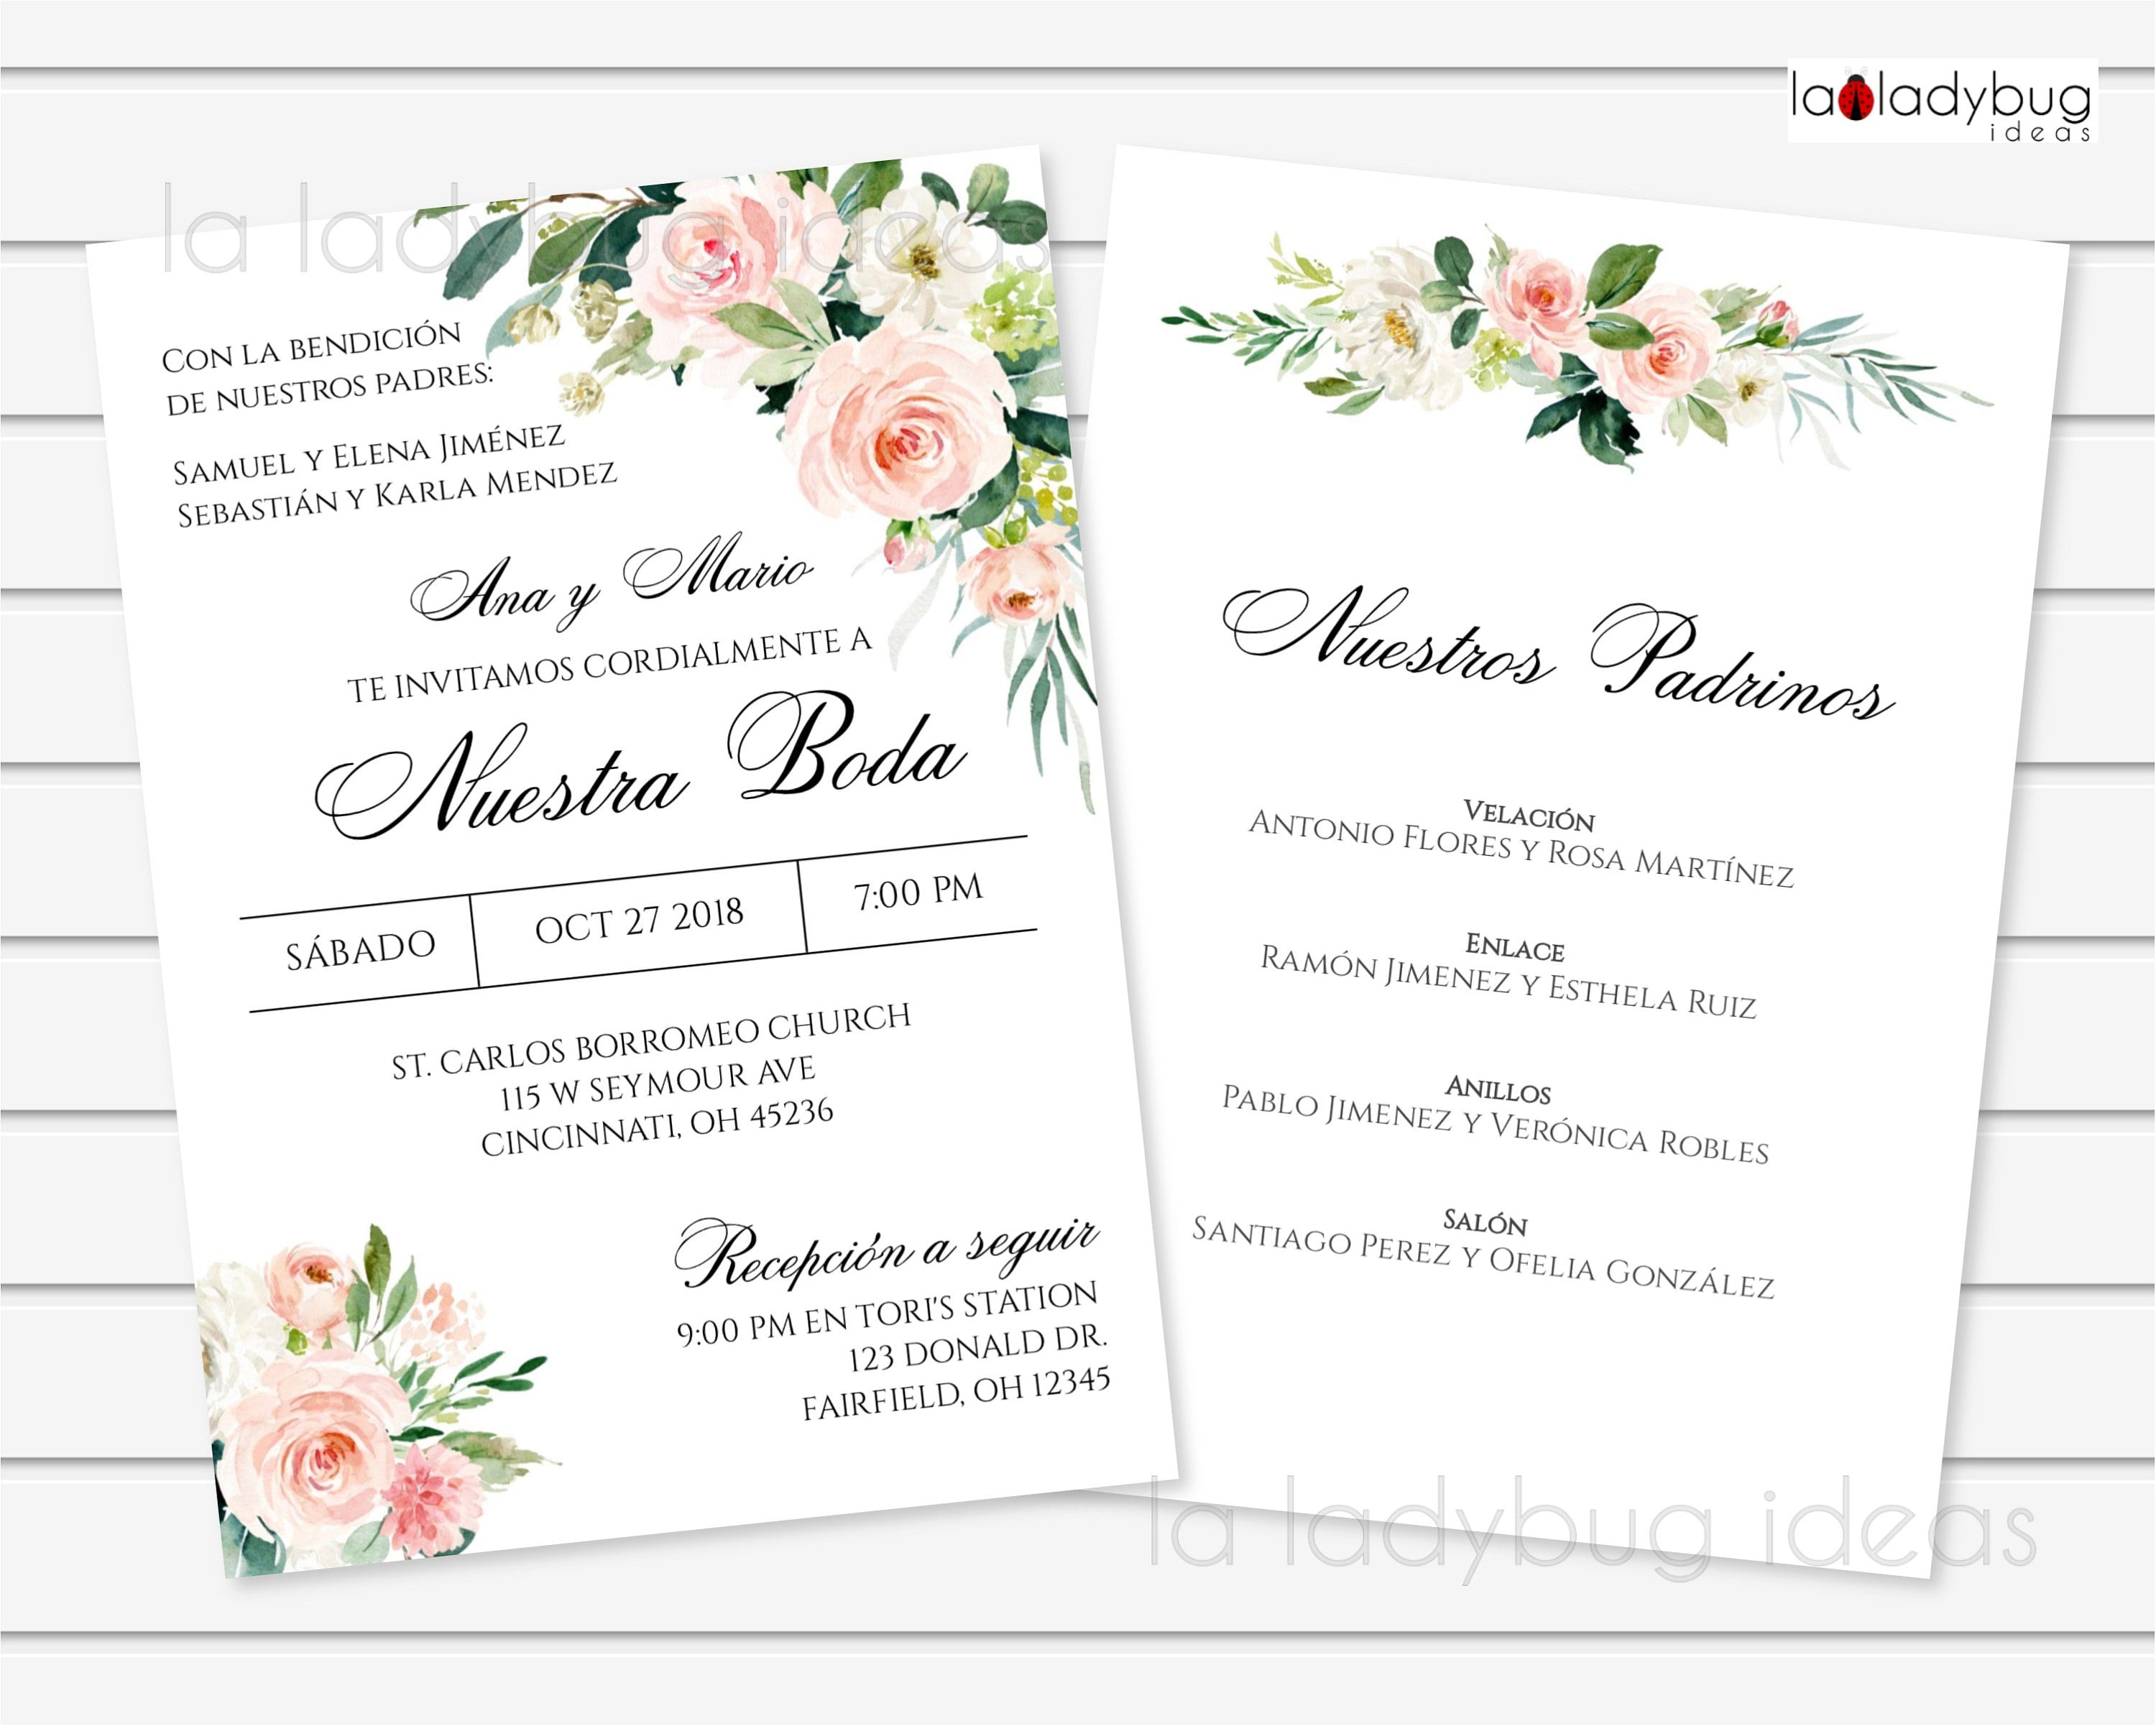 Invitaciones para bodas - Cris Atelier